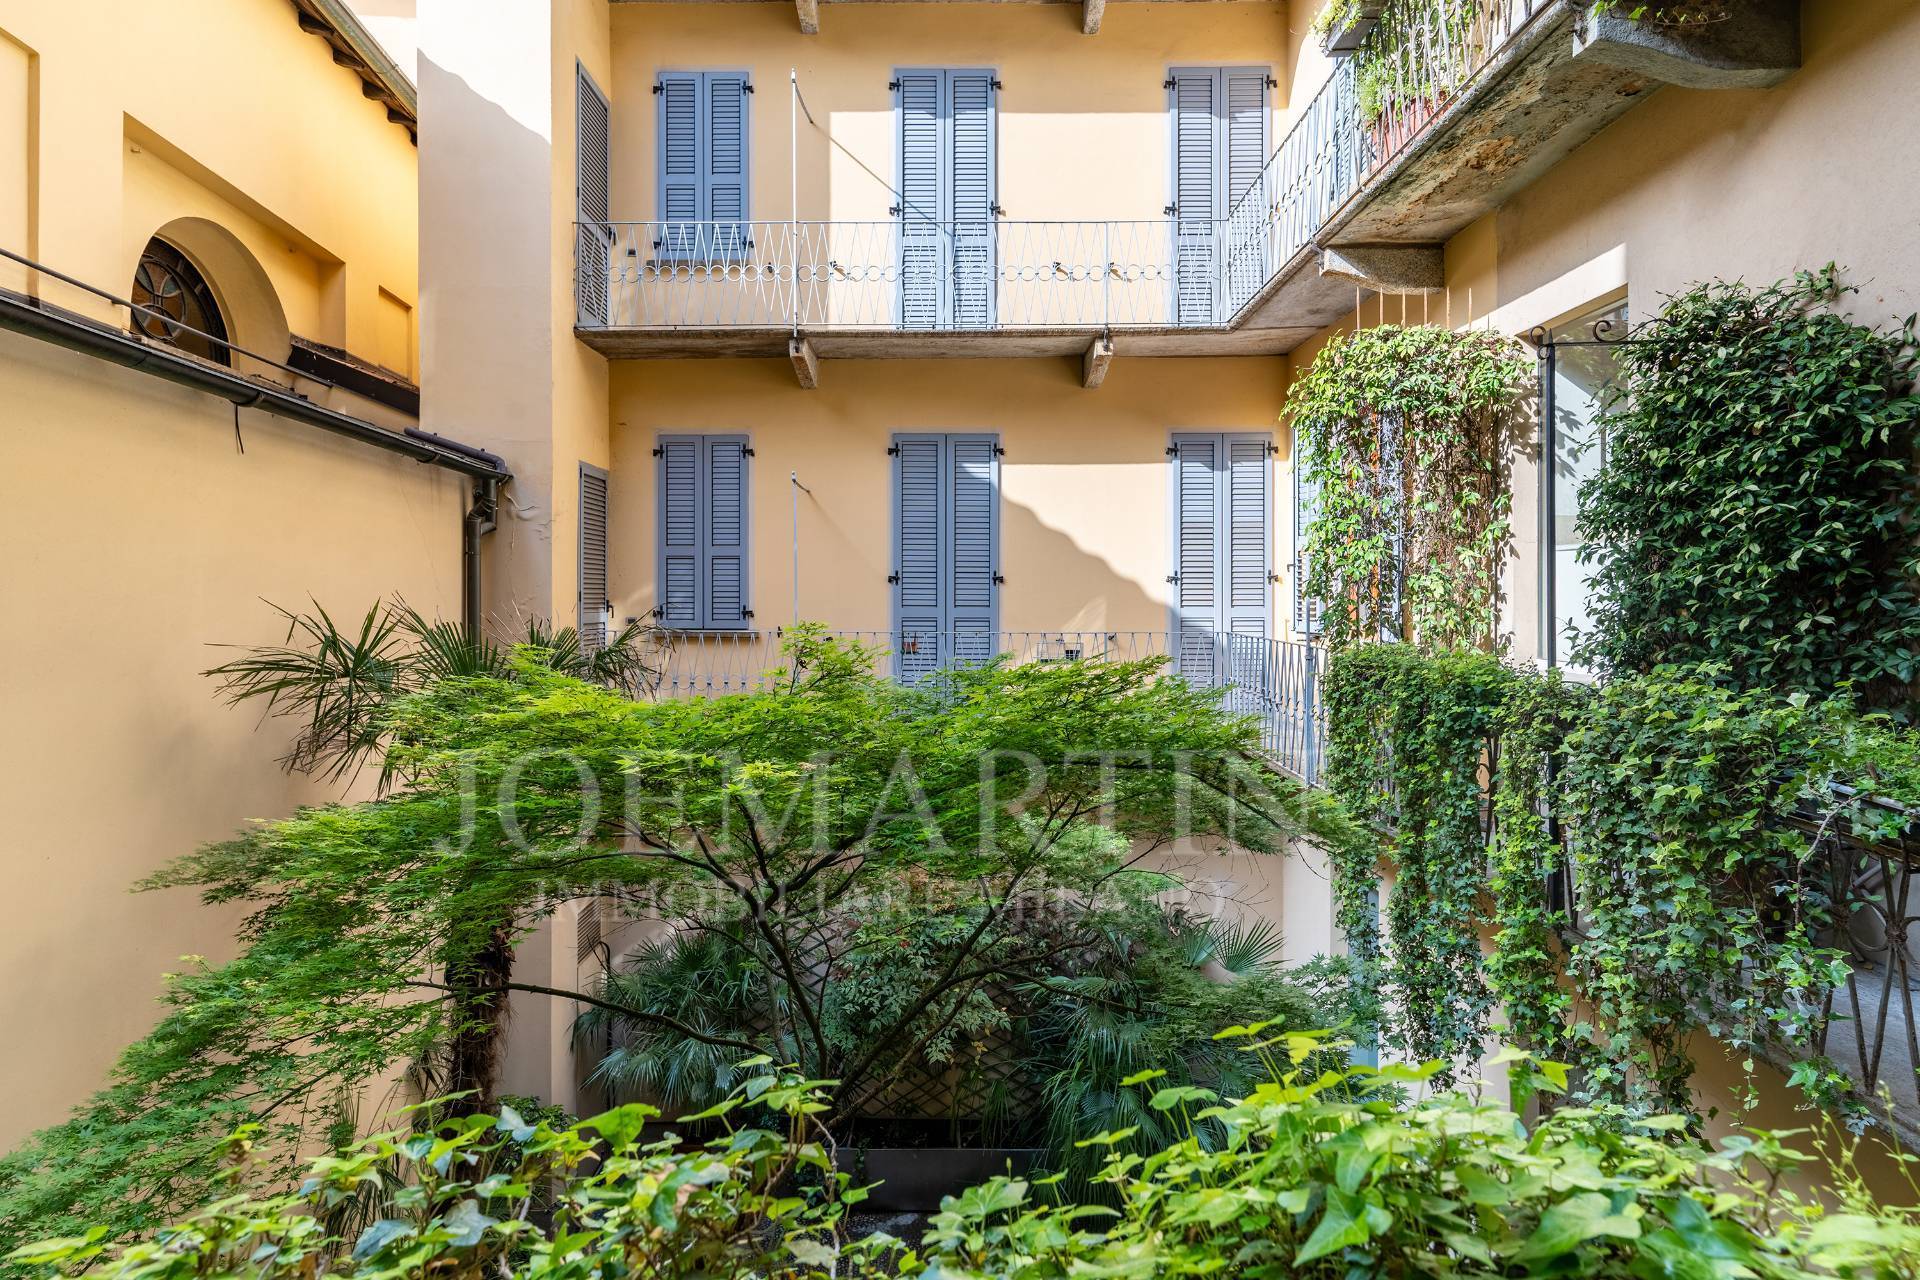 Appartamento arredato in affitto, Milano centro storico